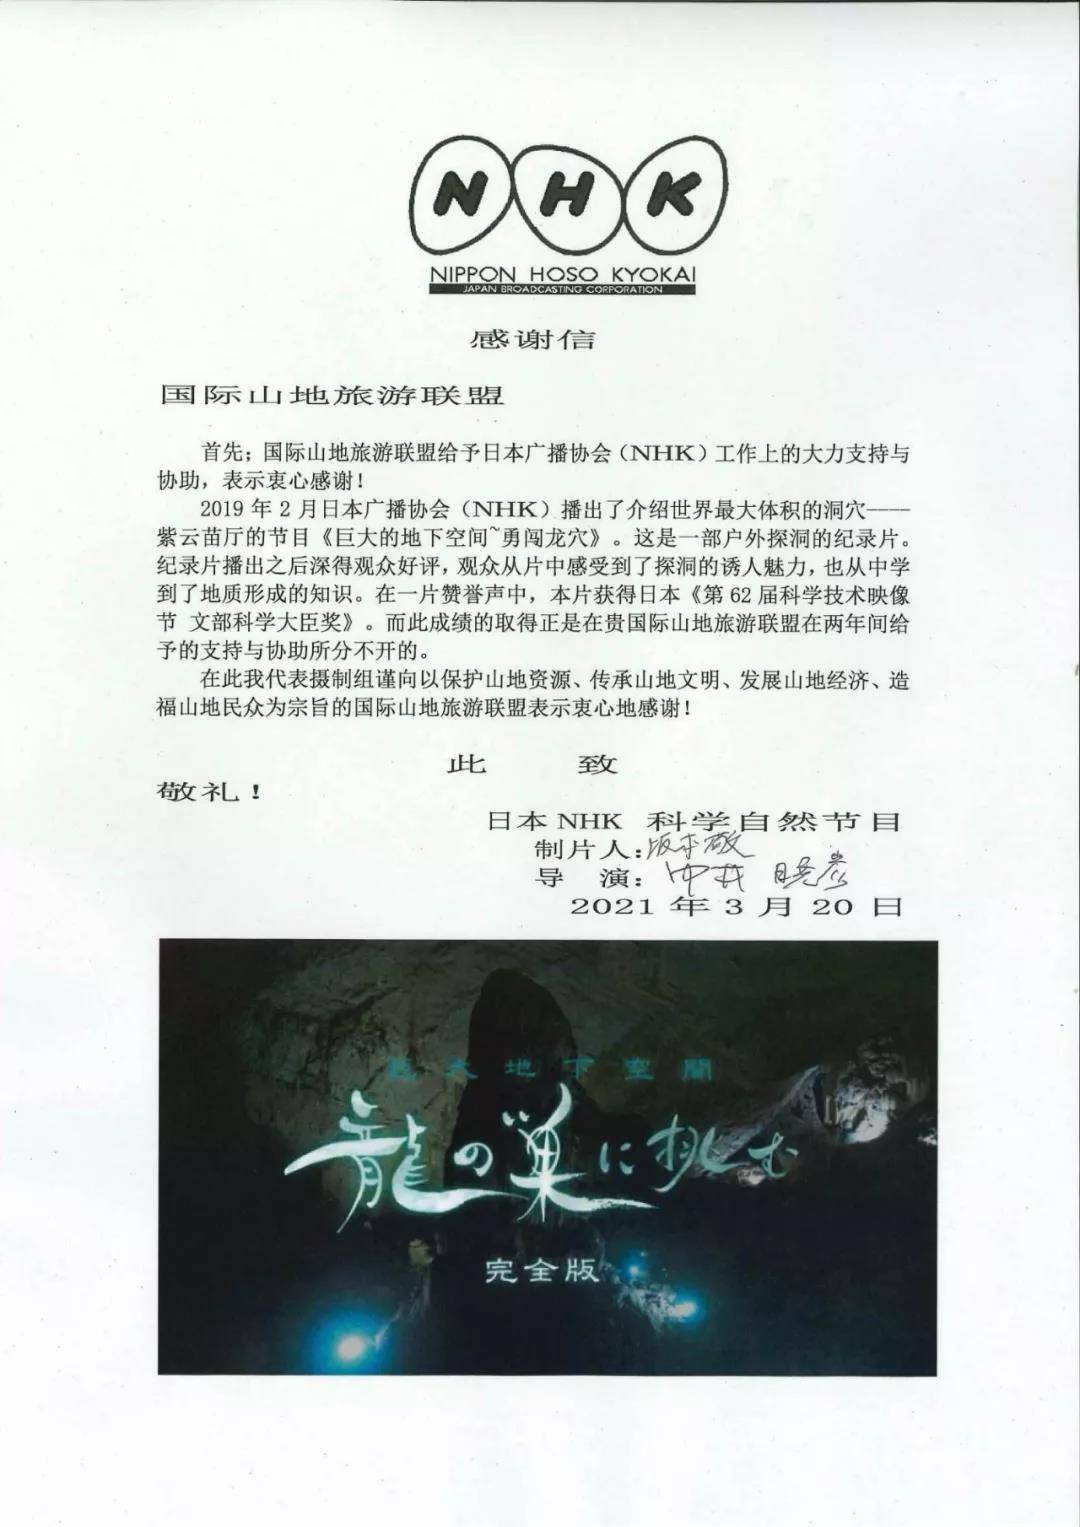 联盟协助NHK拍摄的贵州溶洞纪录片在日获奖